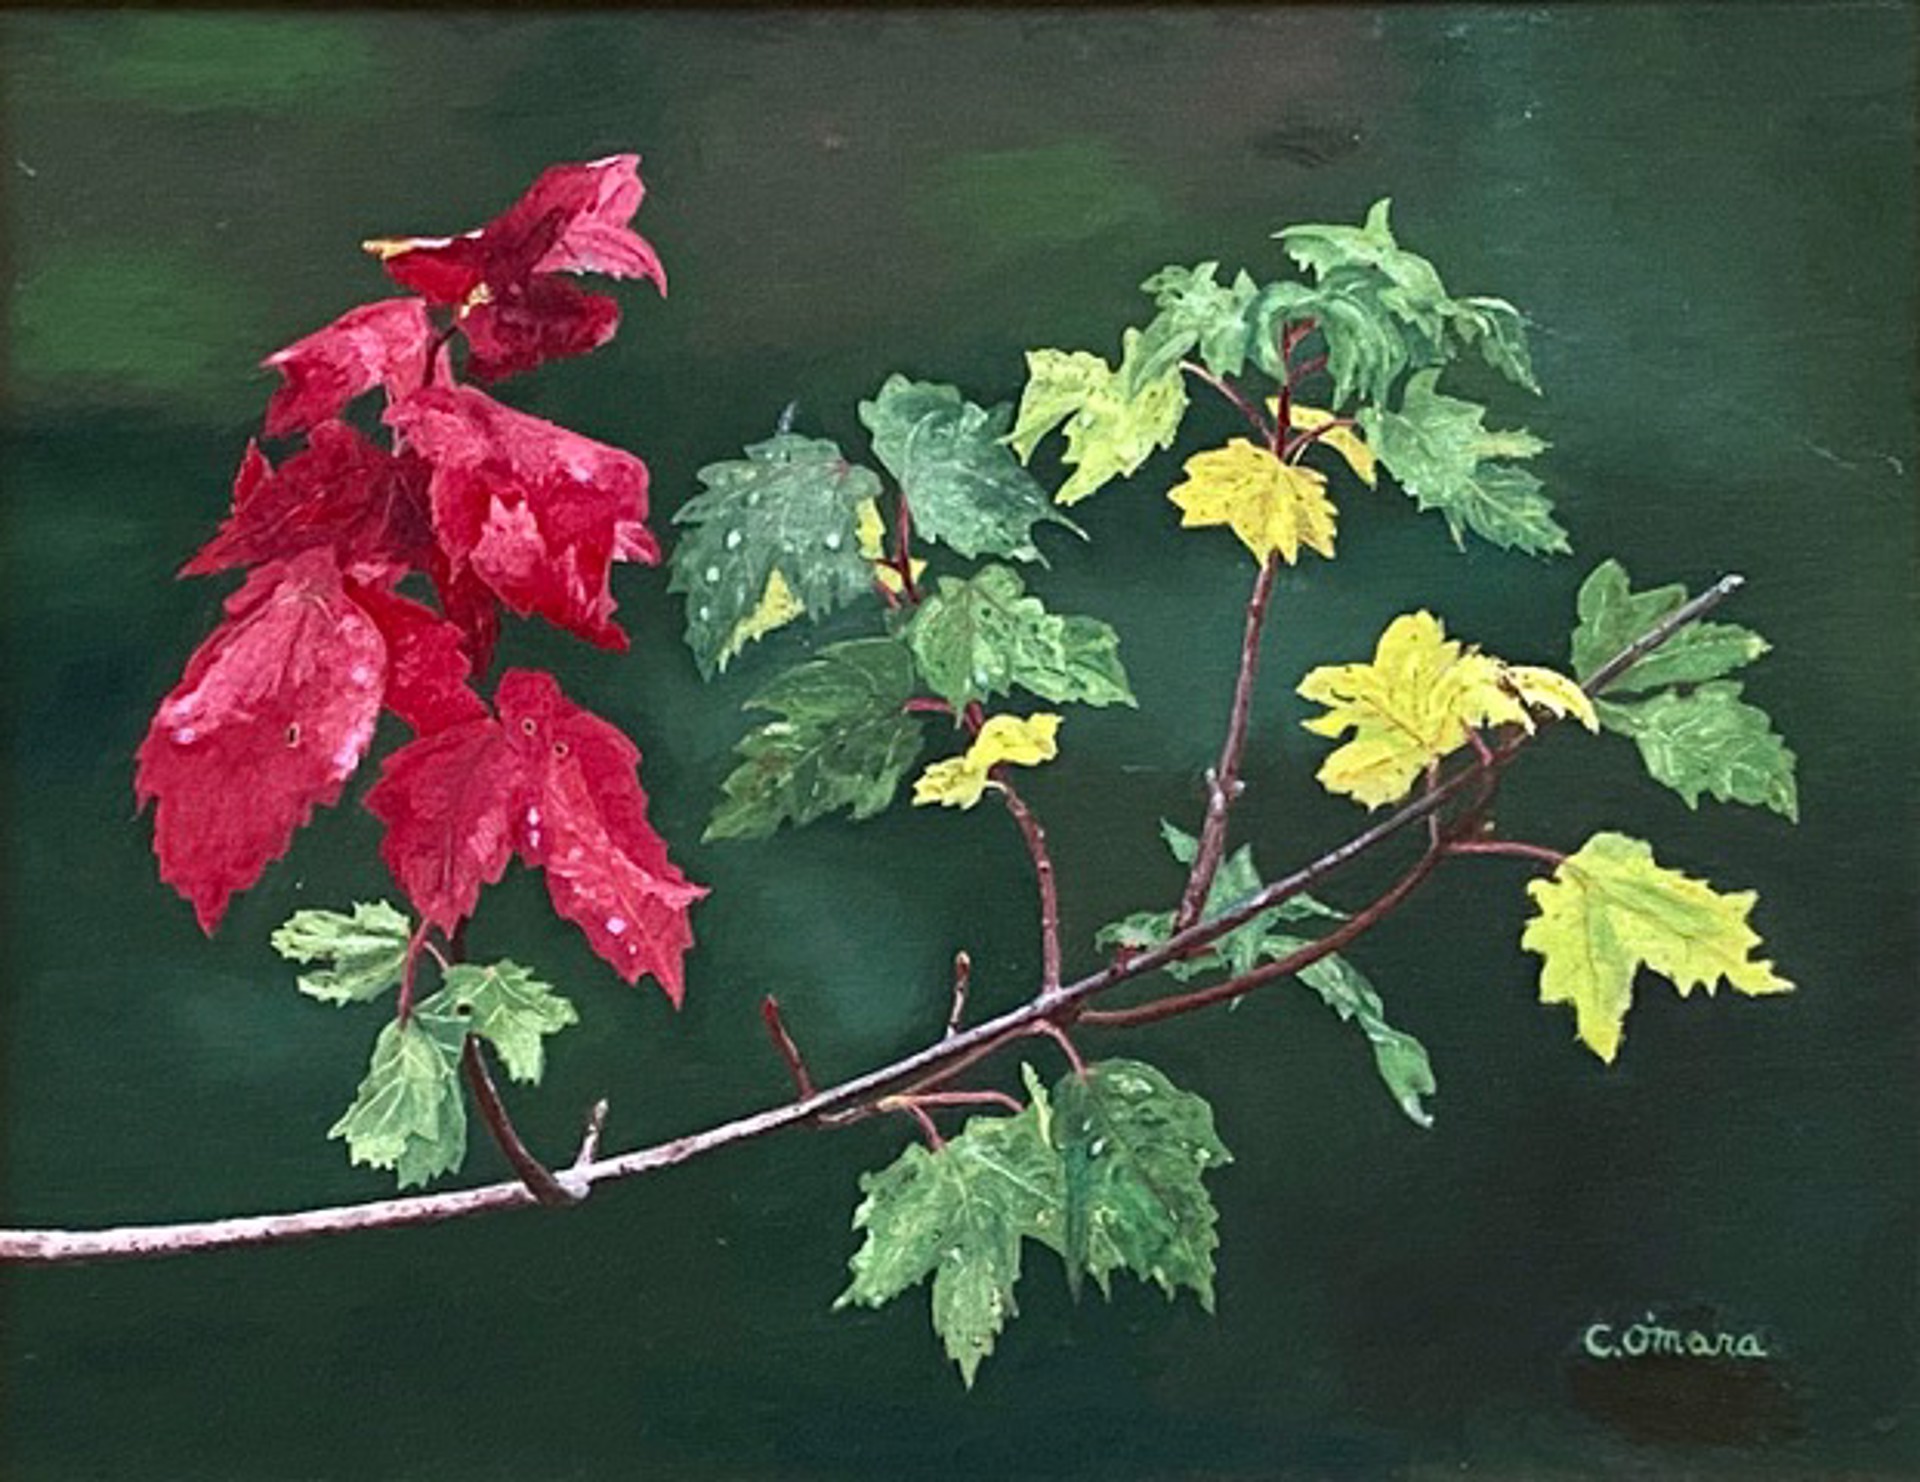 Changing Seasons by Charles O'Mara